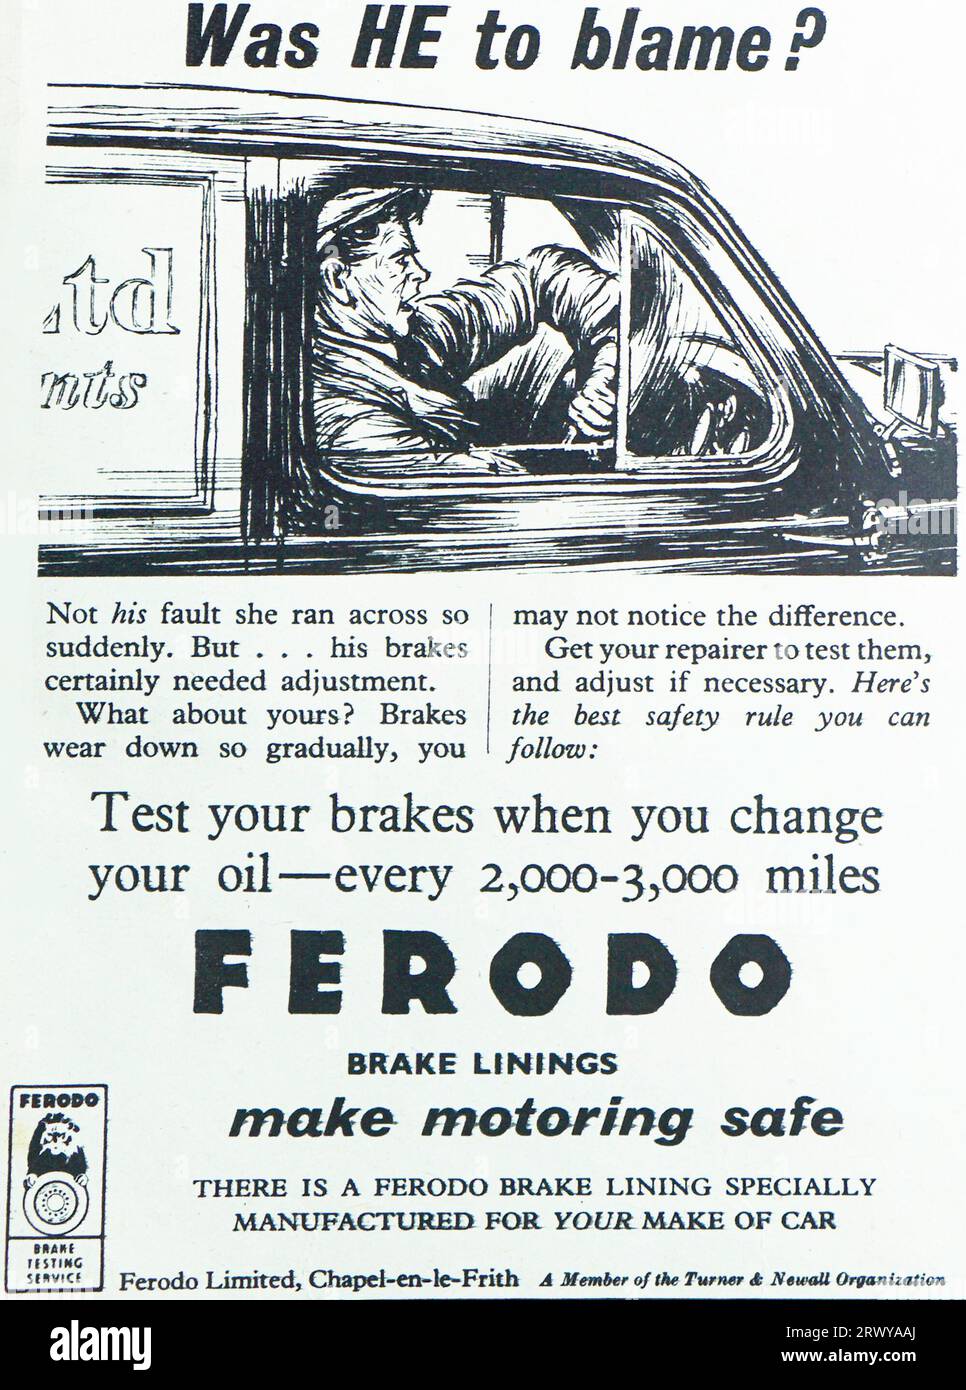 Eine Werbung für Ferodo Bremsbeläge aus dem Jahr 1950. Die Werbung zeigt einen offensichtlich beunruhigten Van-Fahrer mit der Überschrift „war er schuld?“ Die Anzeige besagt, dass der Unfall nicht seine Schuld war, aber seine Bremsen mussten angepasst werden. Fahrer sollten ihre Bremsen beim Ölwechsel alle 2000-3000 Meilen prüfen. Ferodo hatte seinen Sitz in Chapel-en-le-Frith und war Mitglied der Turner & Newall Group. Stockfoto